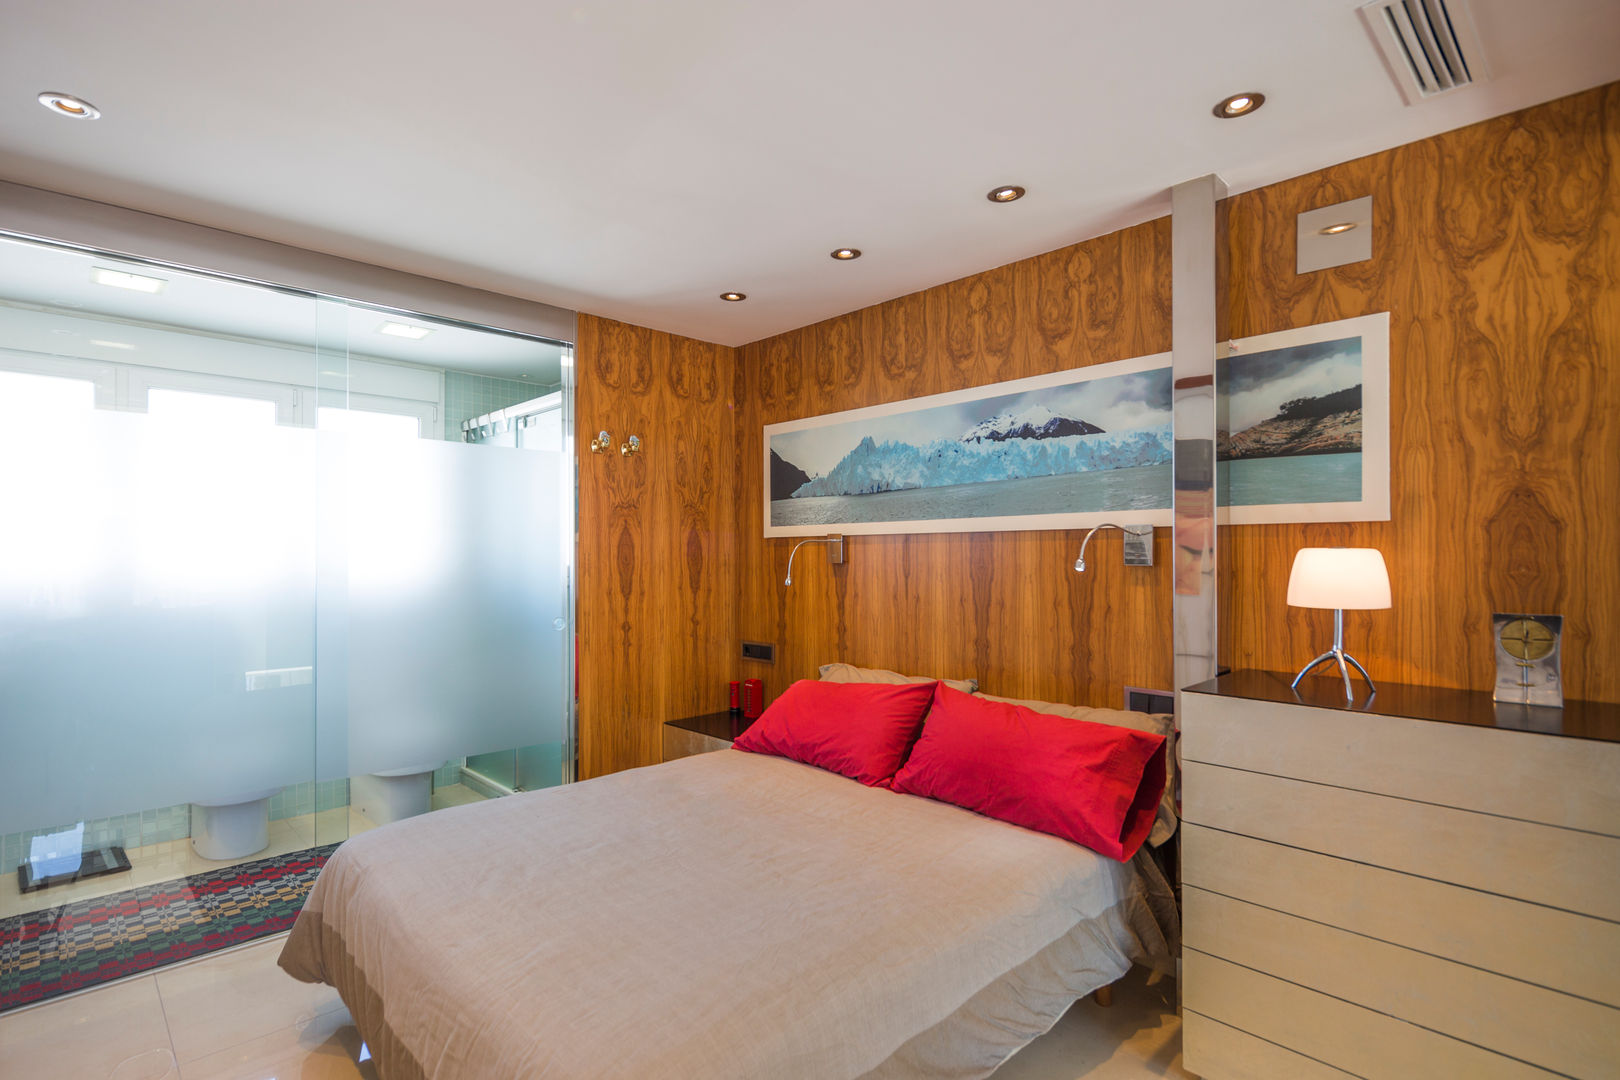 Dormitorio panelado en madera. Barreres del Mundo Architects. Arquitectos e interioristas en Valencia. Dormitorios pequeños Madera Acabado en madera